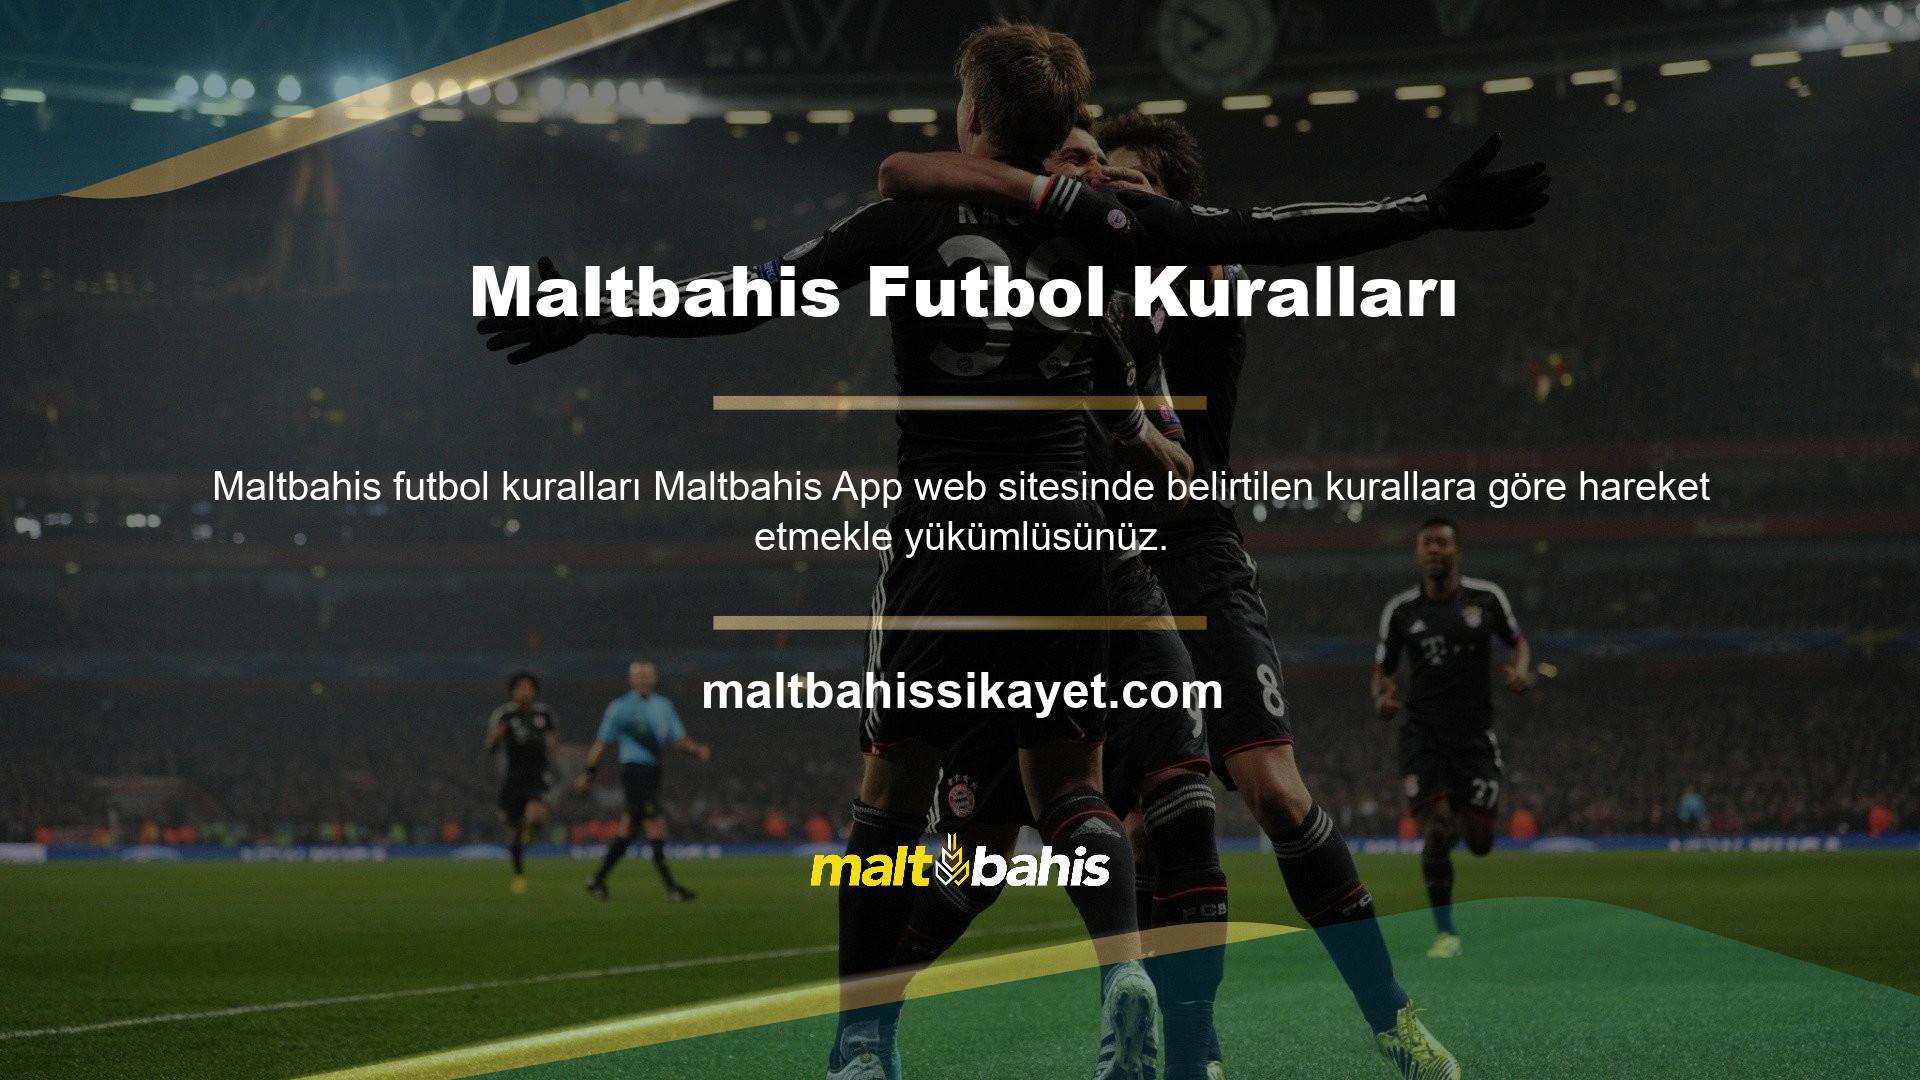 Maltbahis futbol kurallarını uygulayın